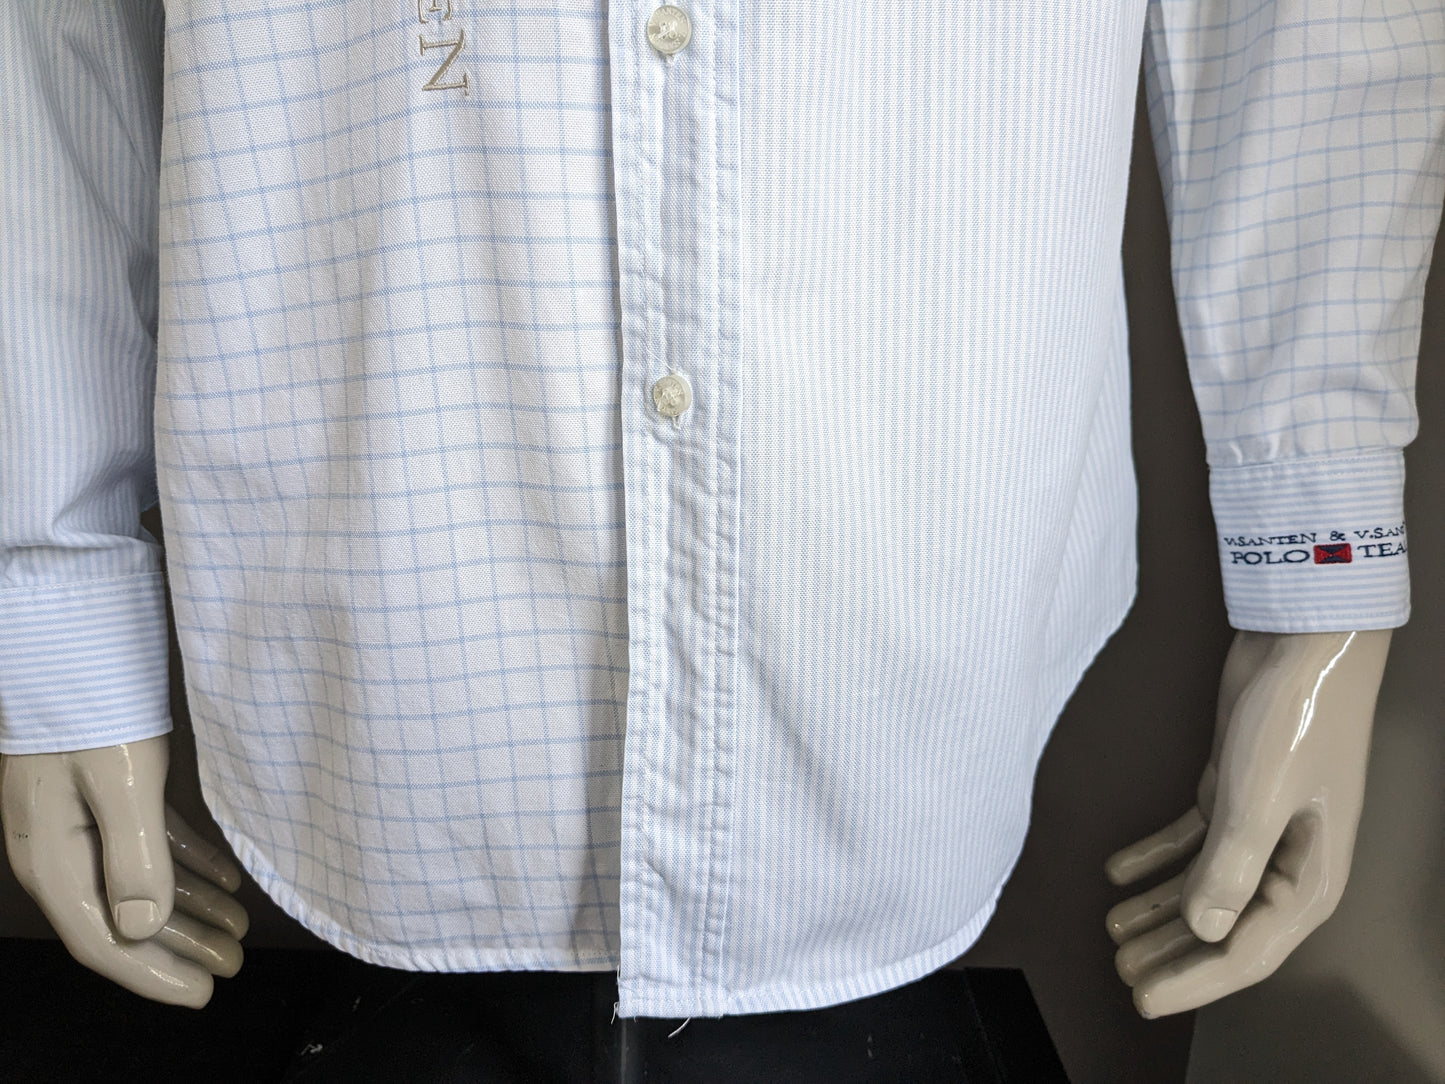 Van Santen y Van Santen camisa. Blanco azul coloreado con aplicaciones. Talla L.